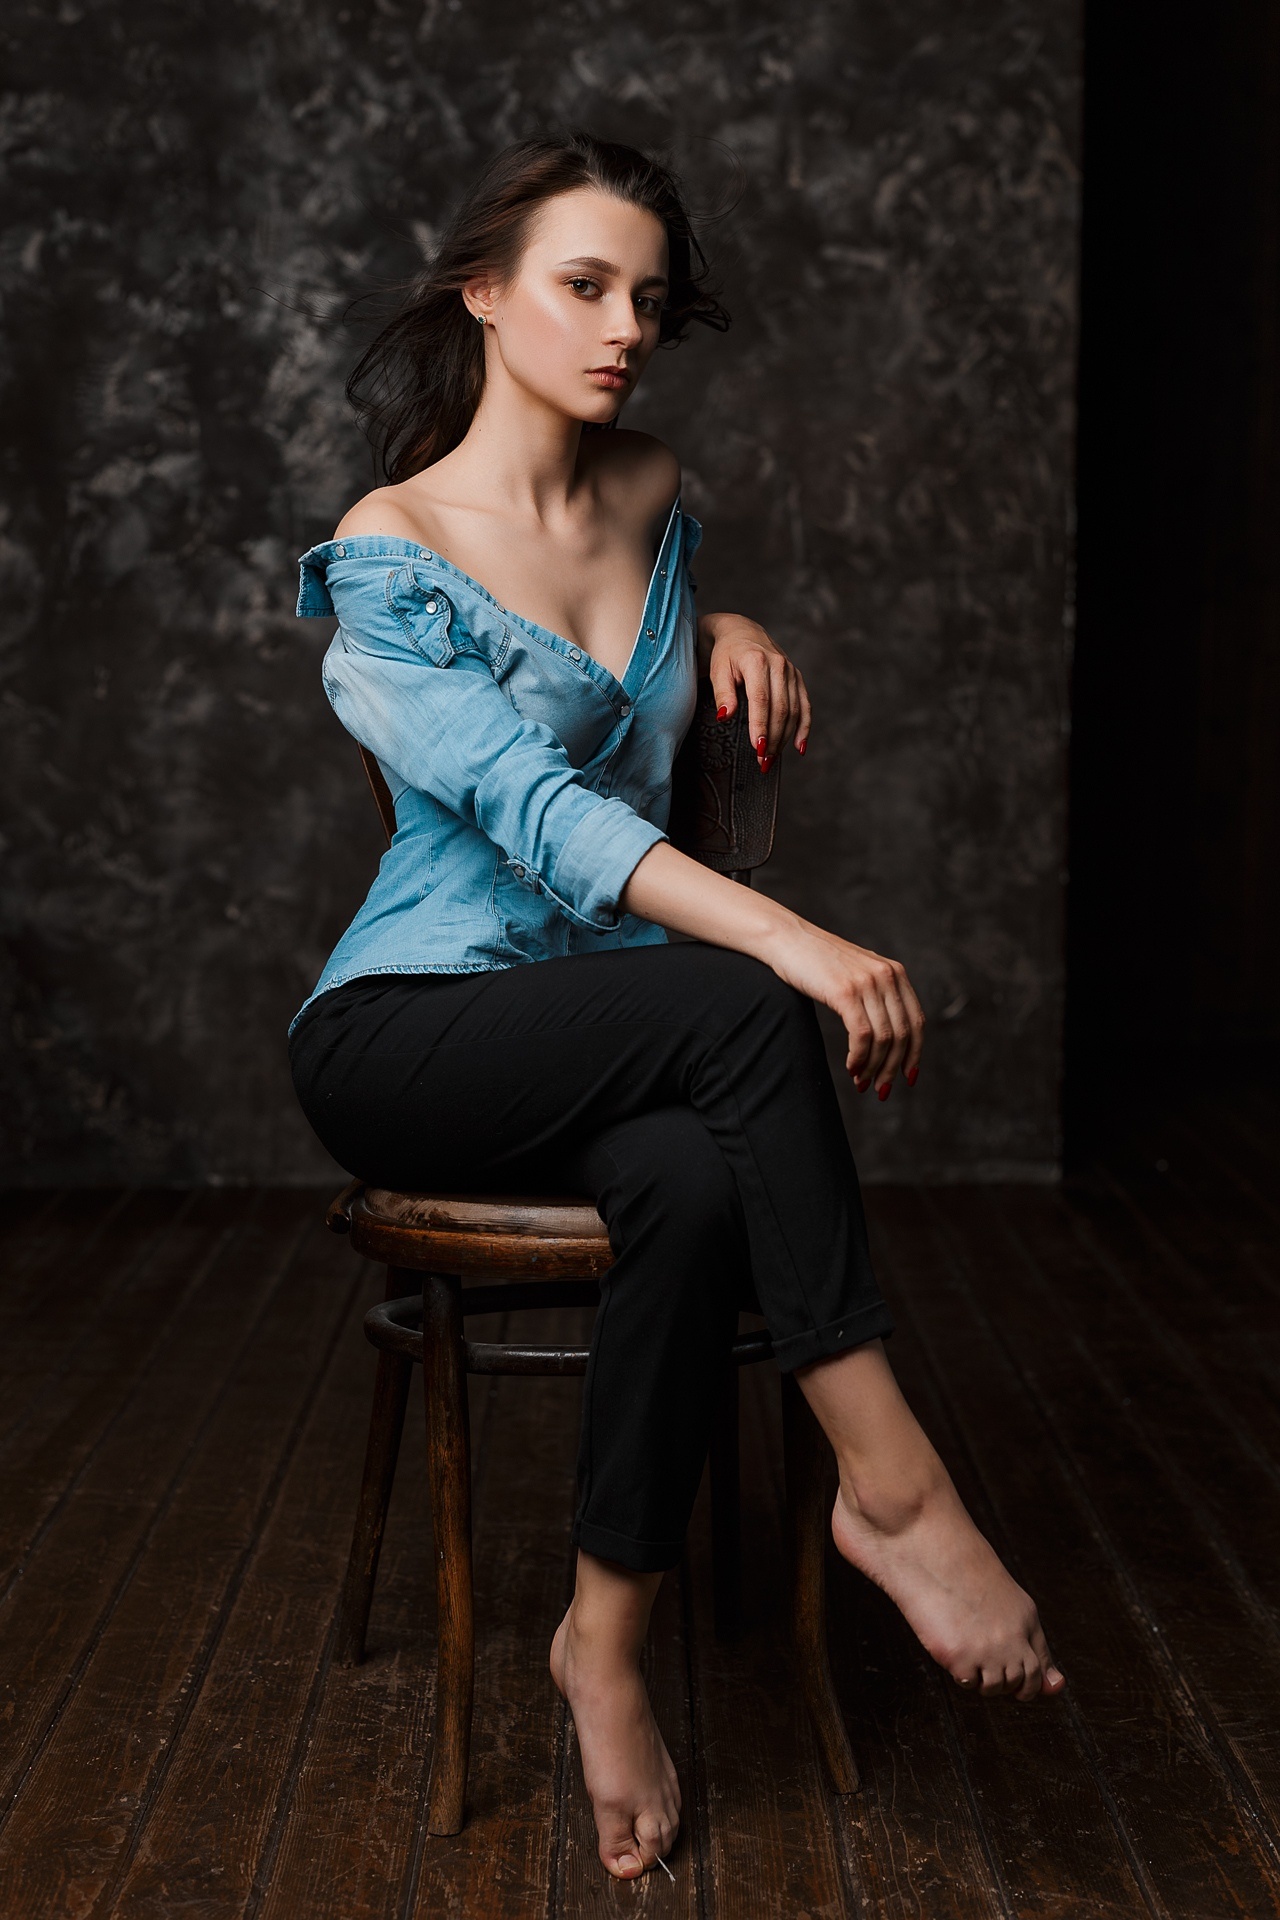 Pavel Ermakov Women Shirt Barefoot Legs Crossed Chair Bare Shoulders Model Brunette Denim Shirt Unbu 1280x1920